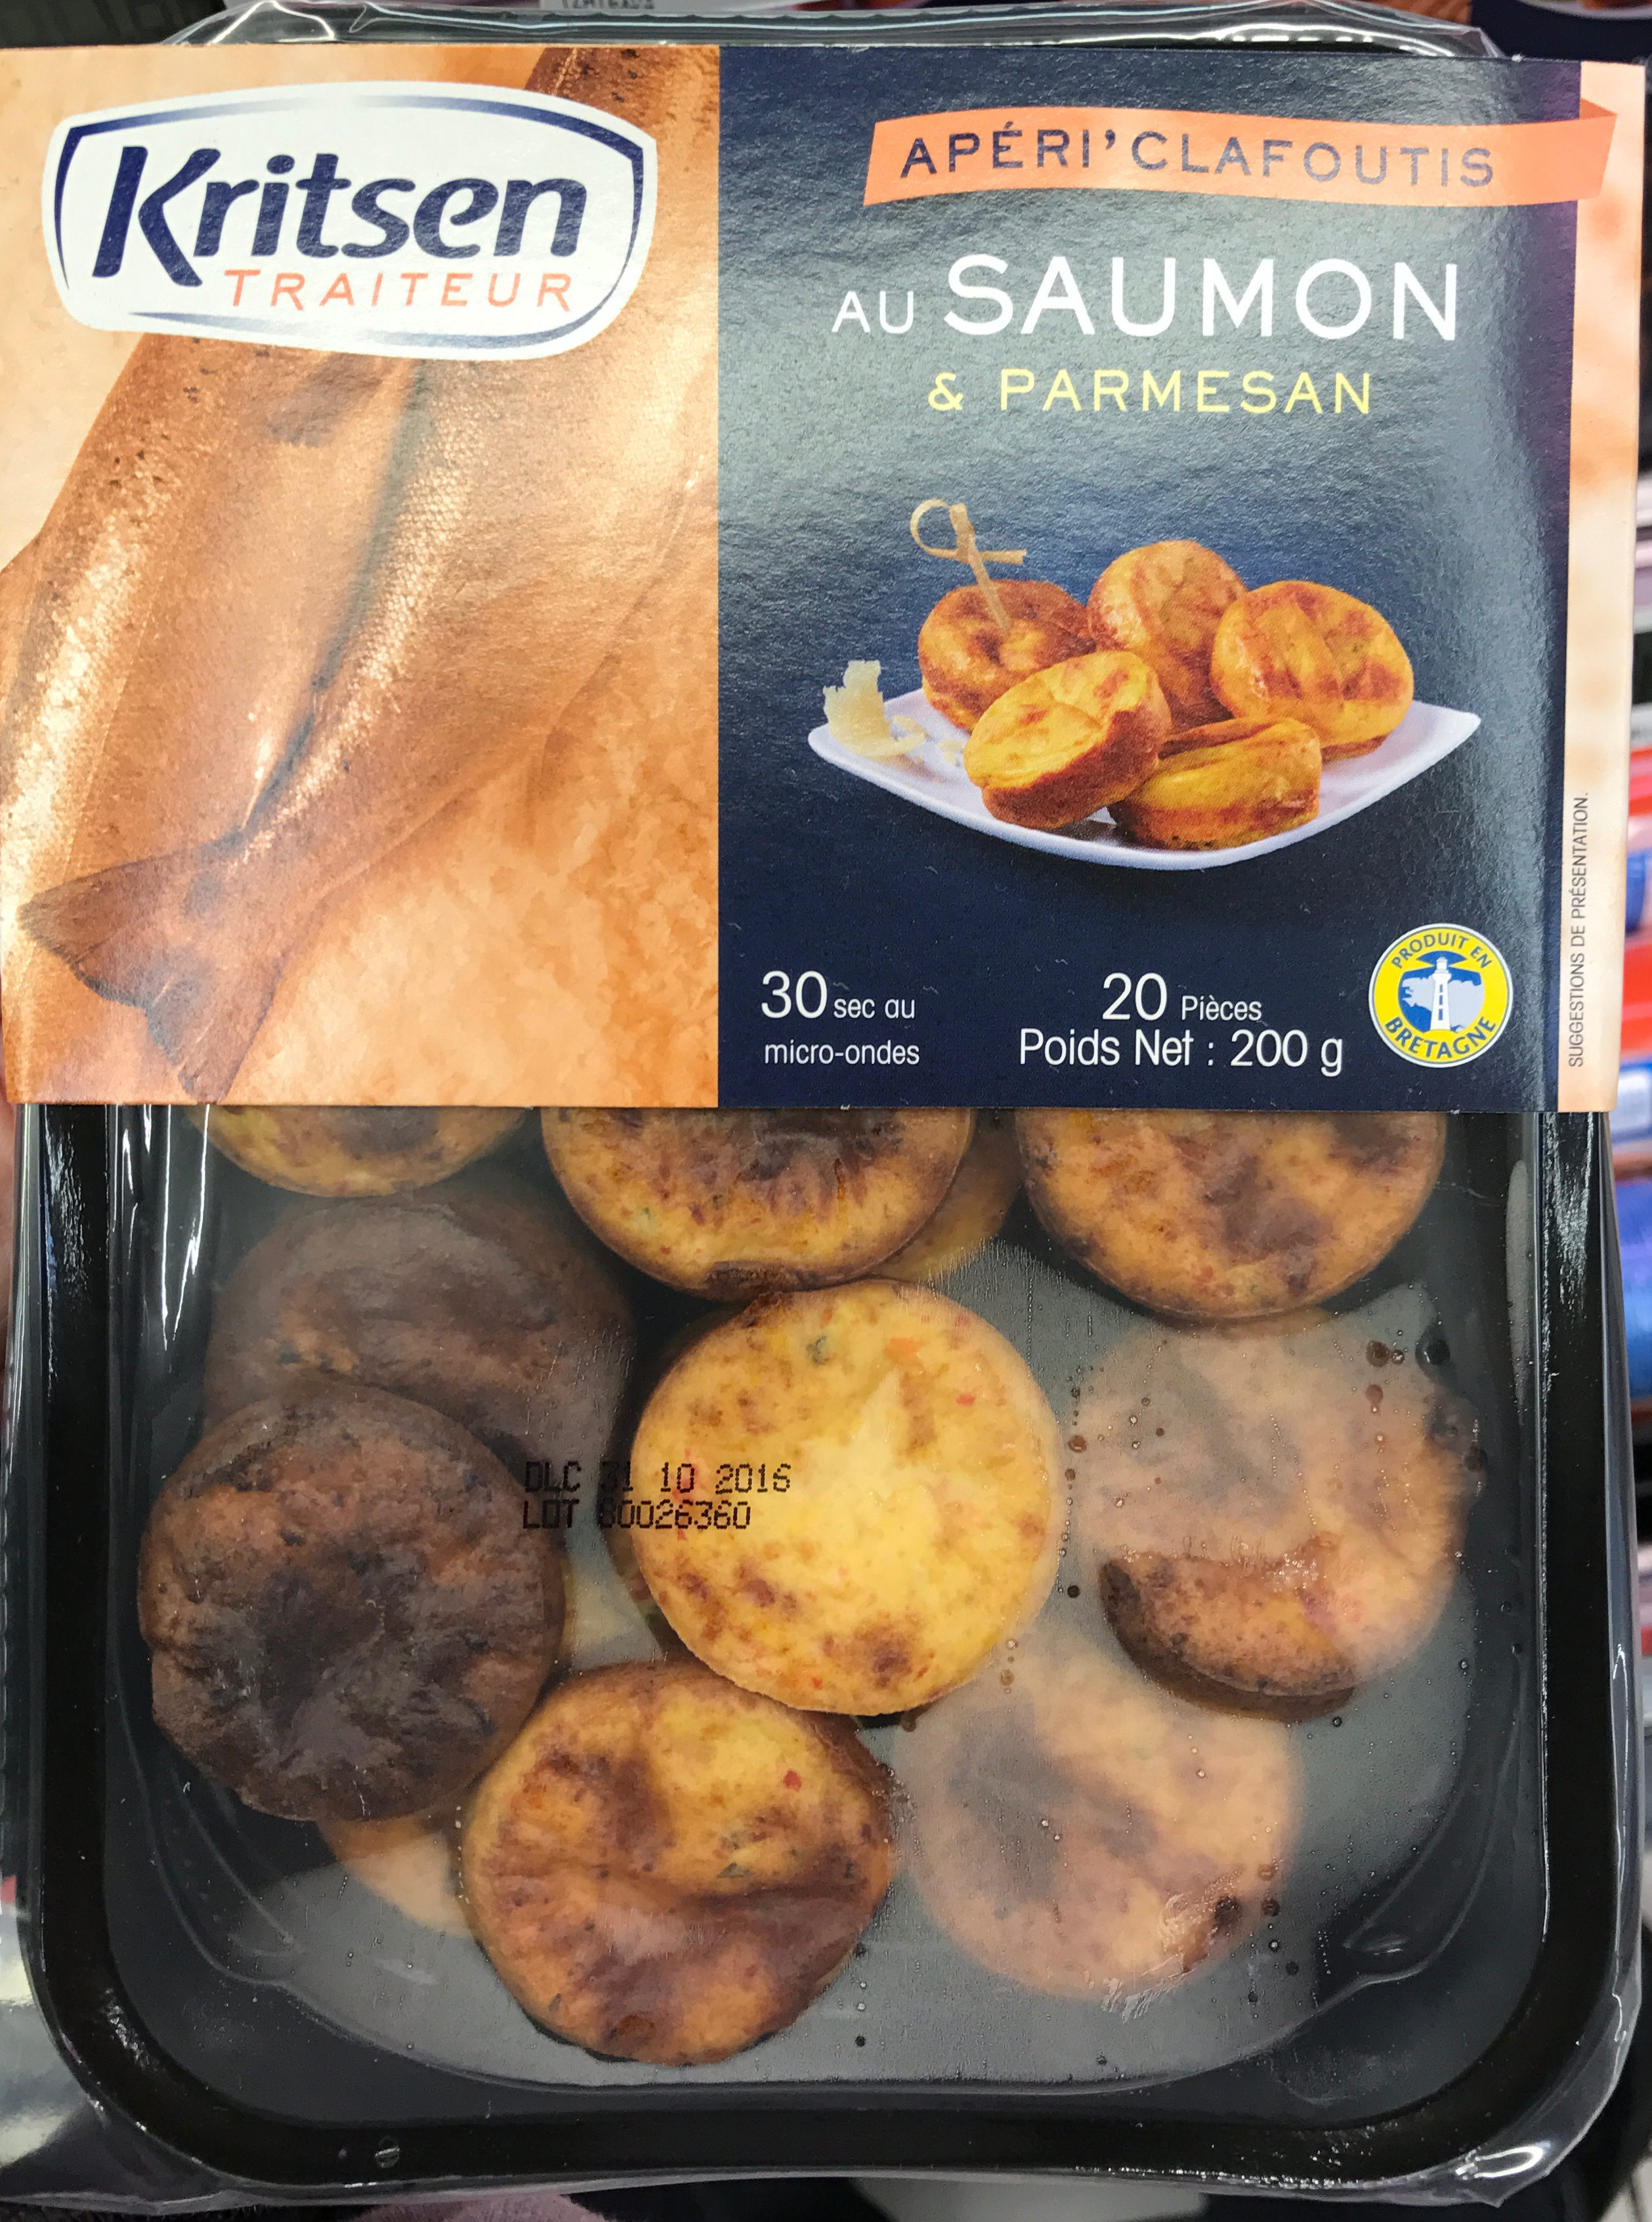 Apéri' Clafoutis au Saumon & Parmesan - Product - fr